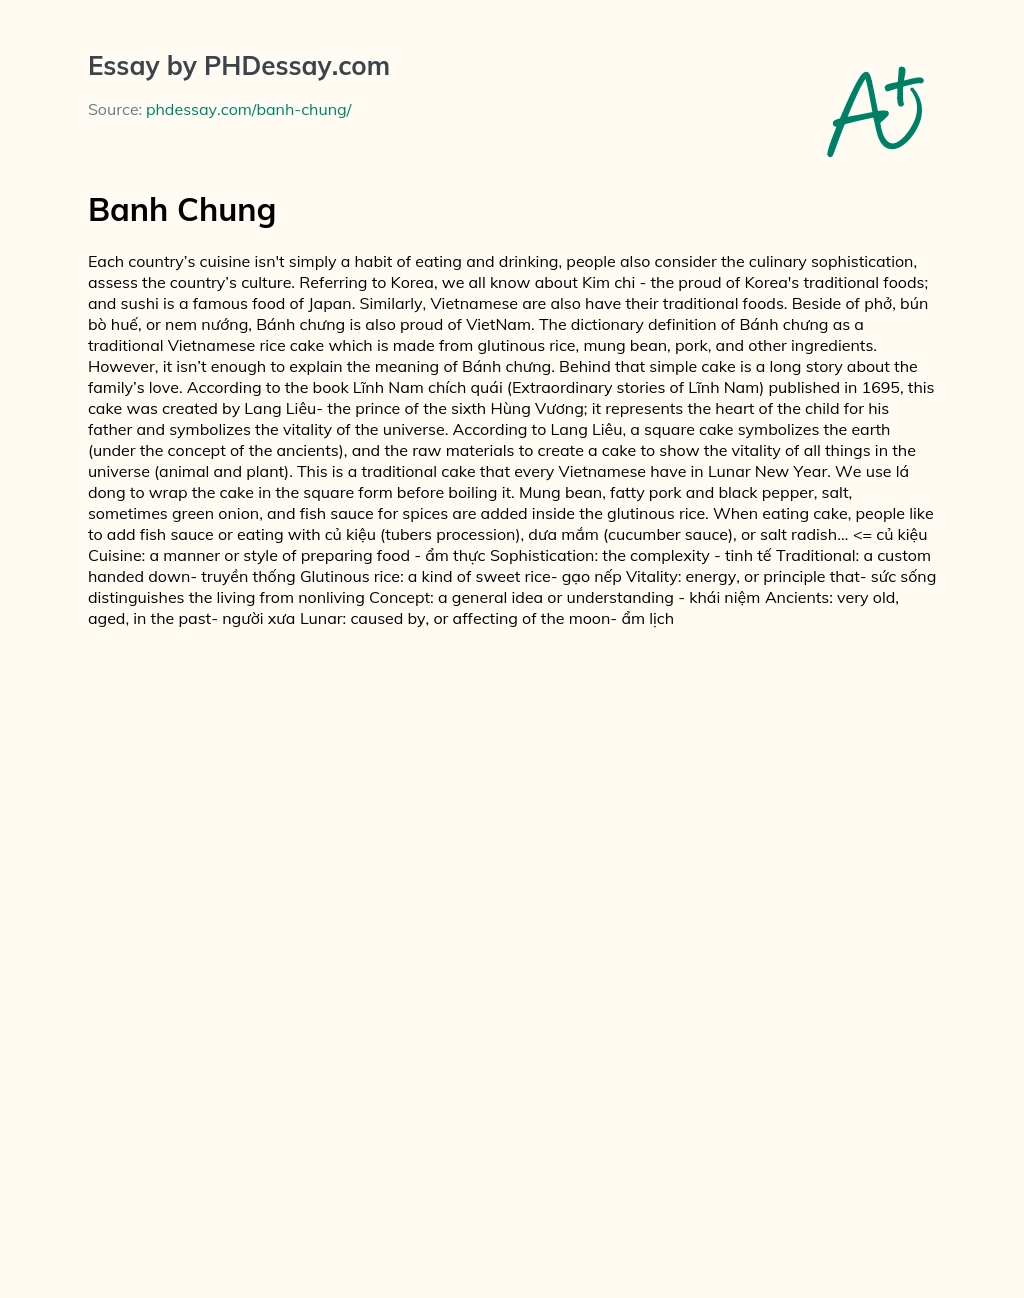 Banh Chung essay